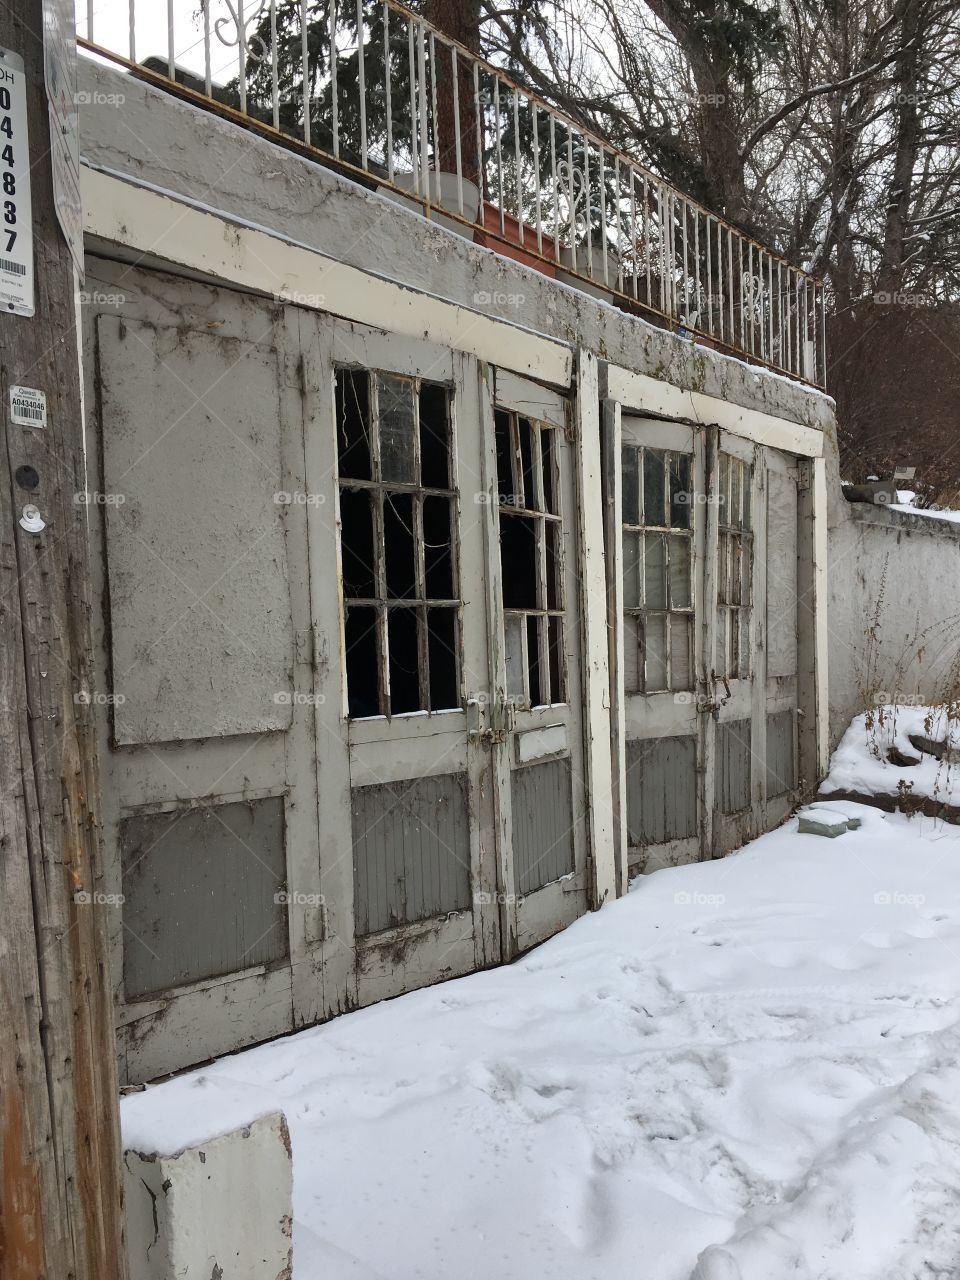 Weathered garage doors